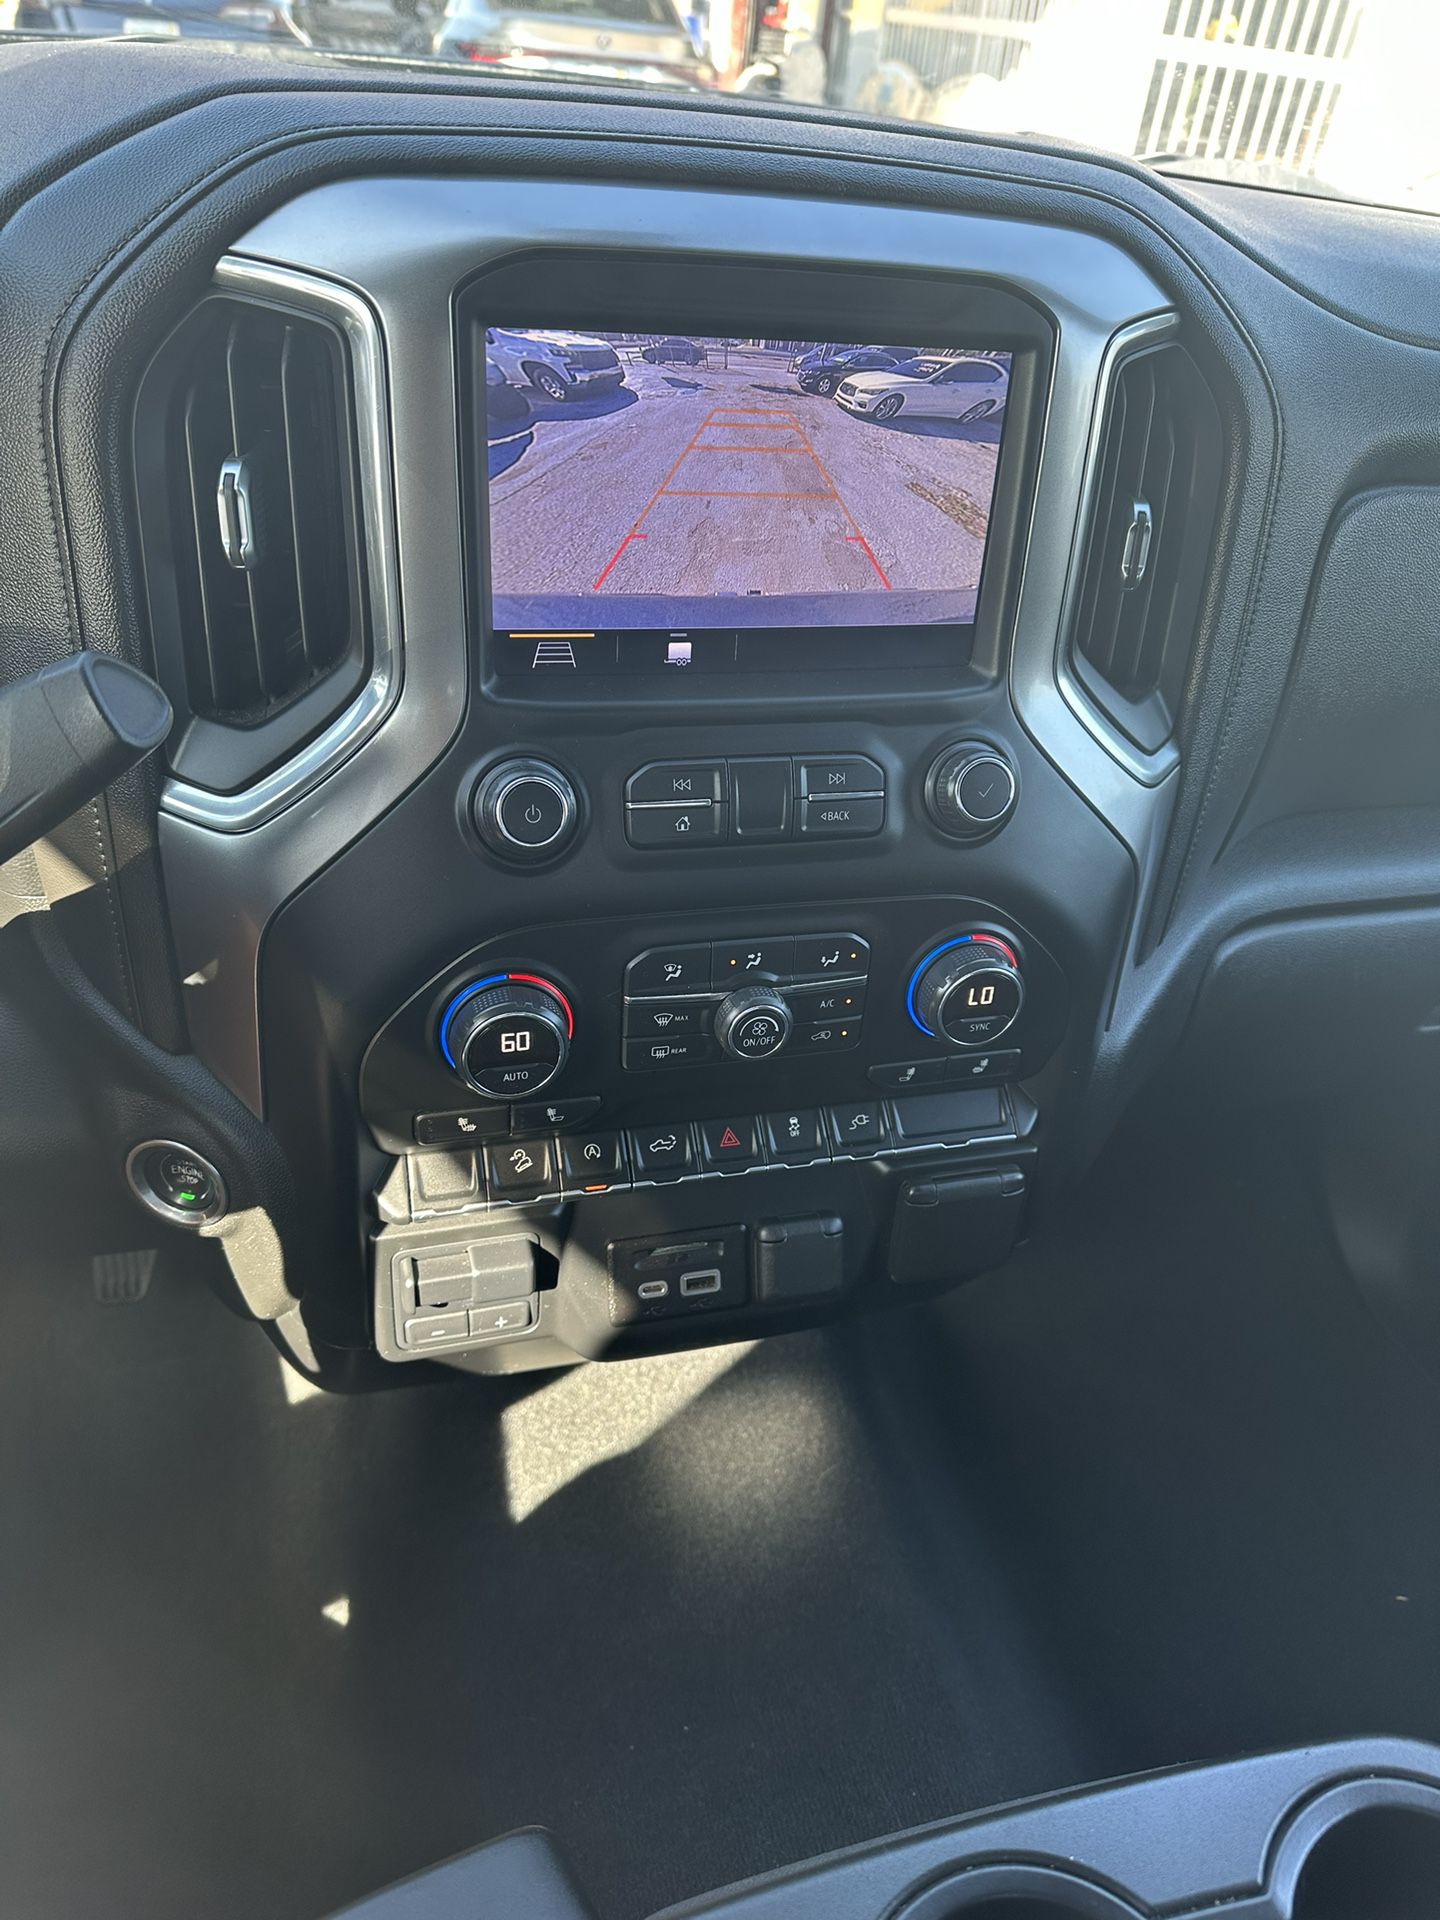 used 2019 Chevrolet Silverado - interior view 3